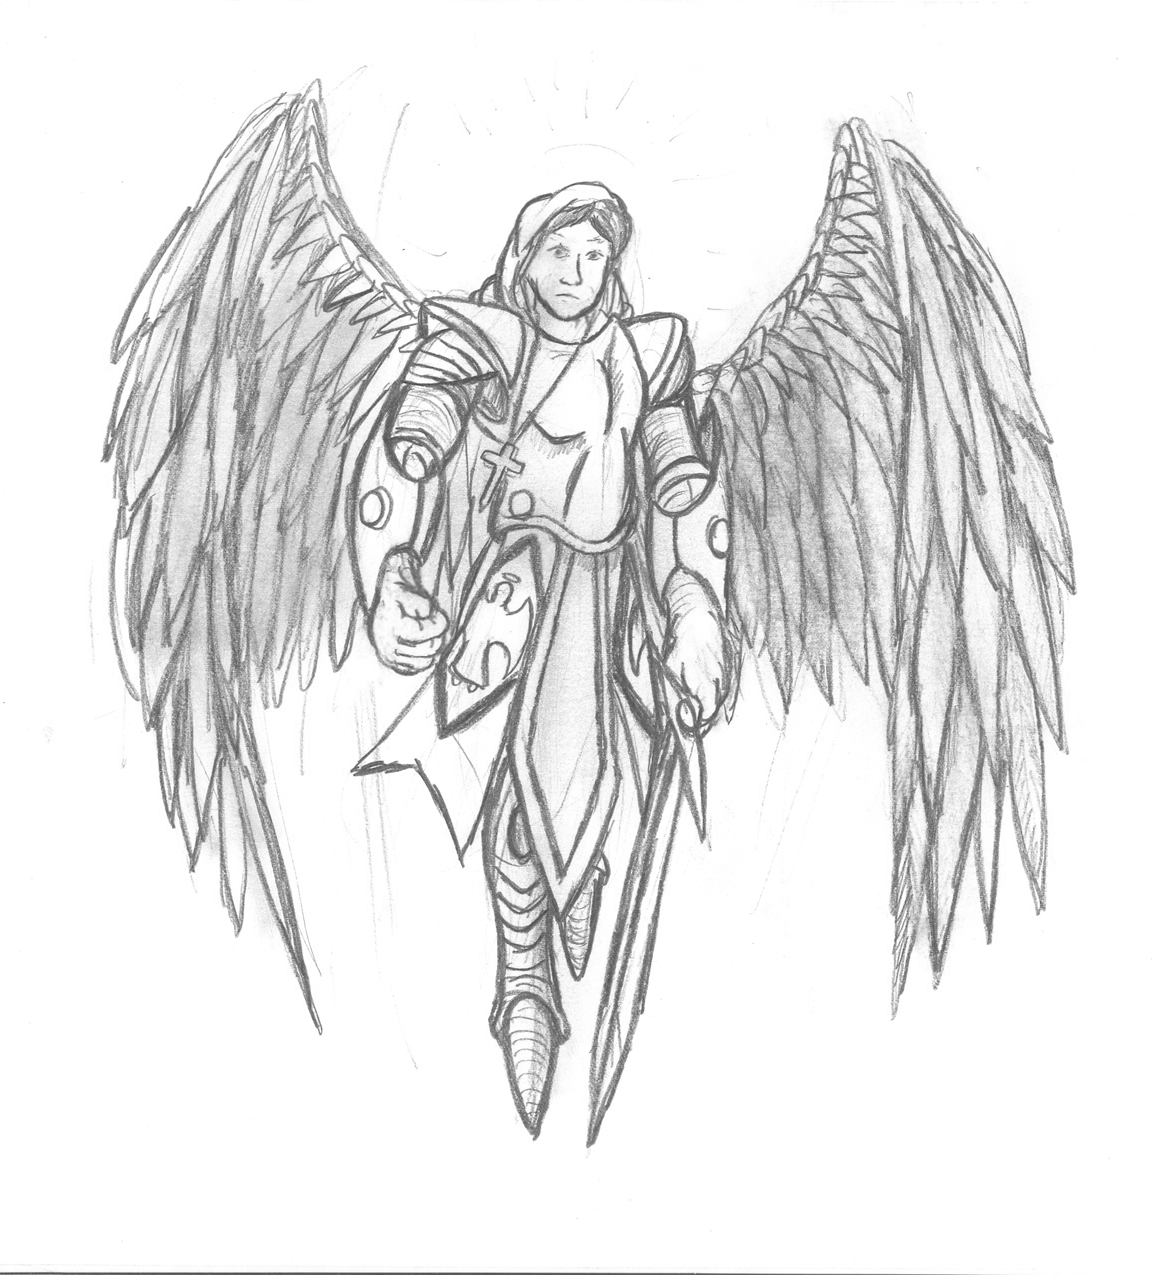 Armed Seraphim by TargonRedDragon on DeviantArt.